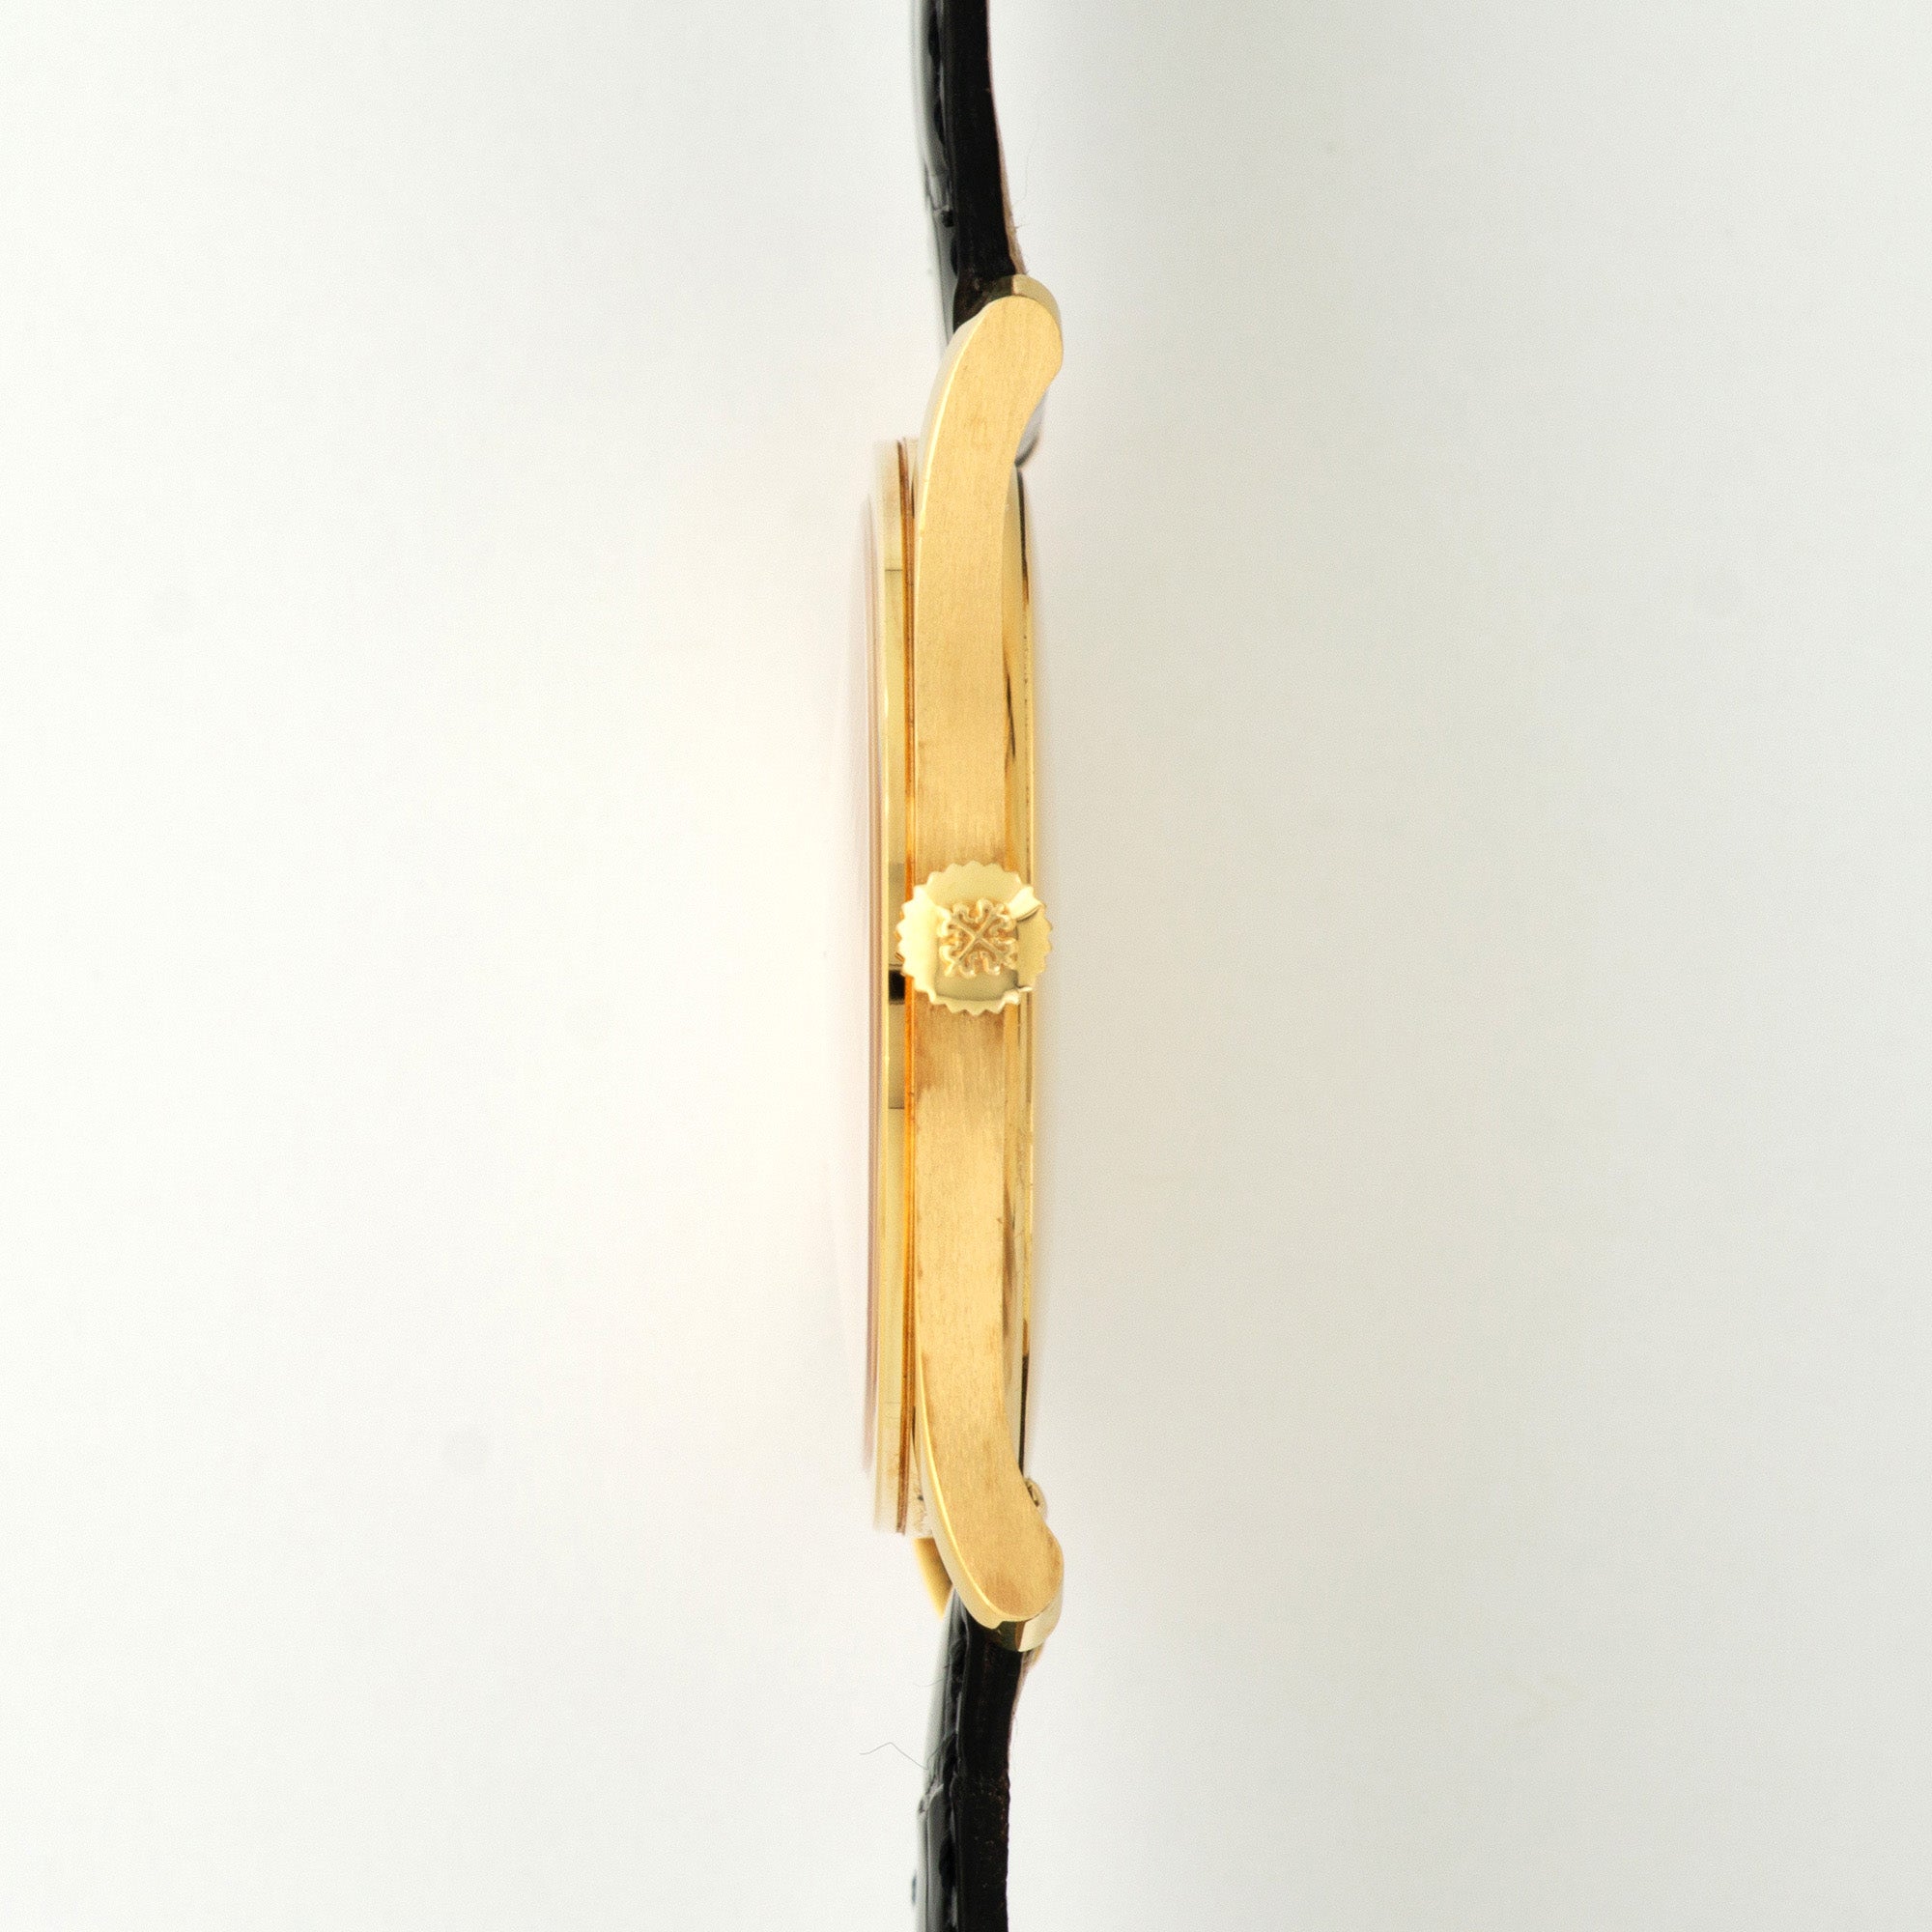 Patek Philippe - Patek Philippe Yellow Gold Calatrava Watch Ref. 5196 - The Keystone Watches